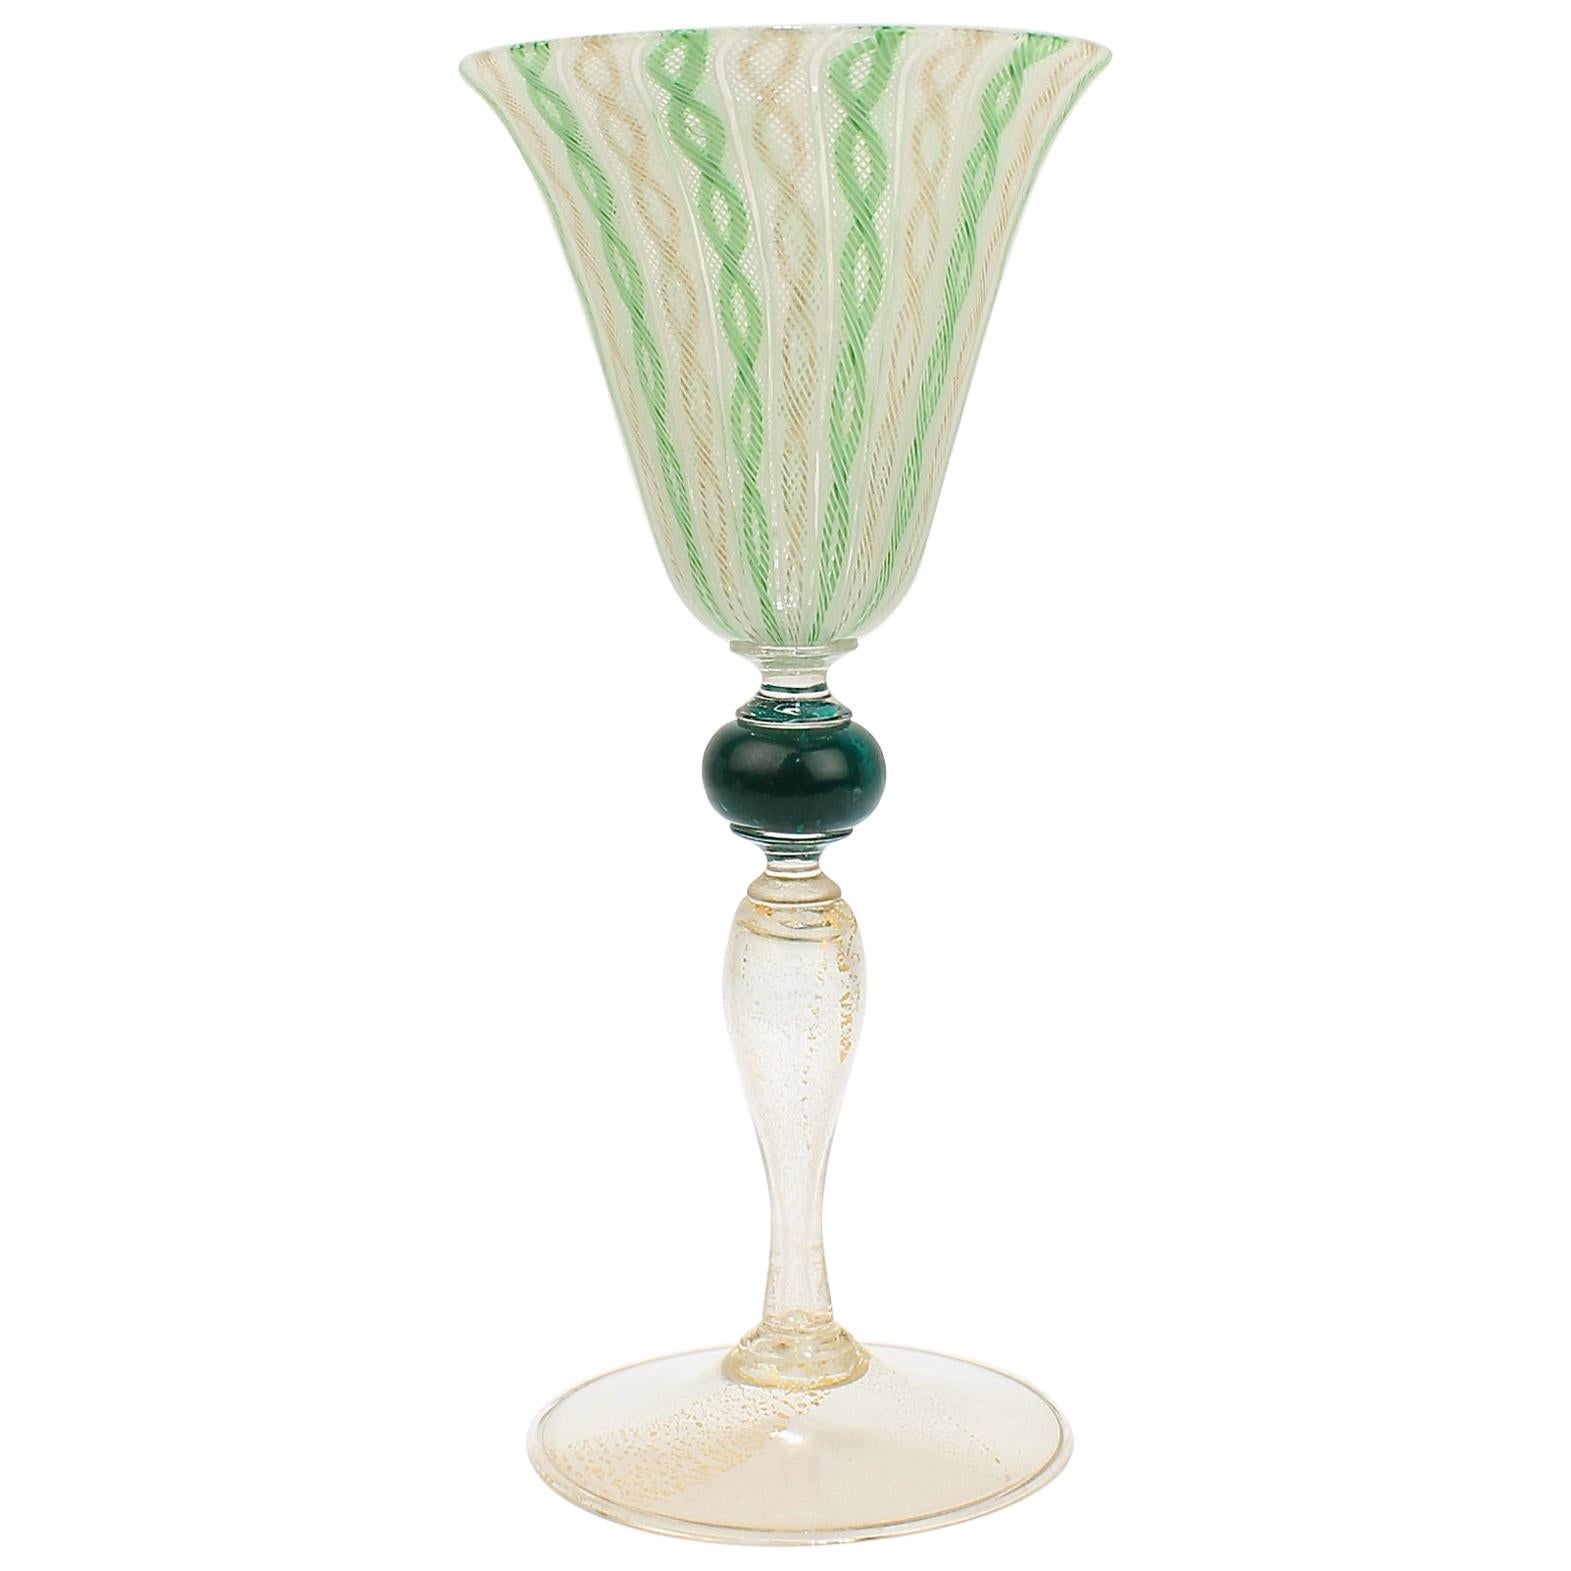 Venetian or Murano Glass Green, White, and Gold Latticinio Swirl Wine Goblet